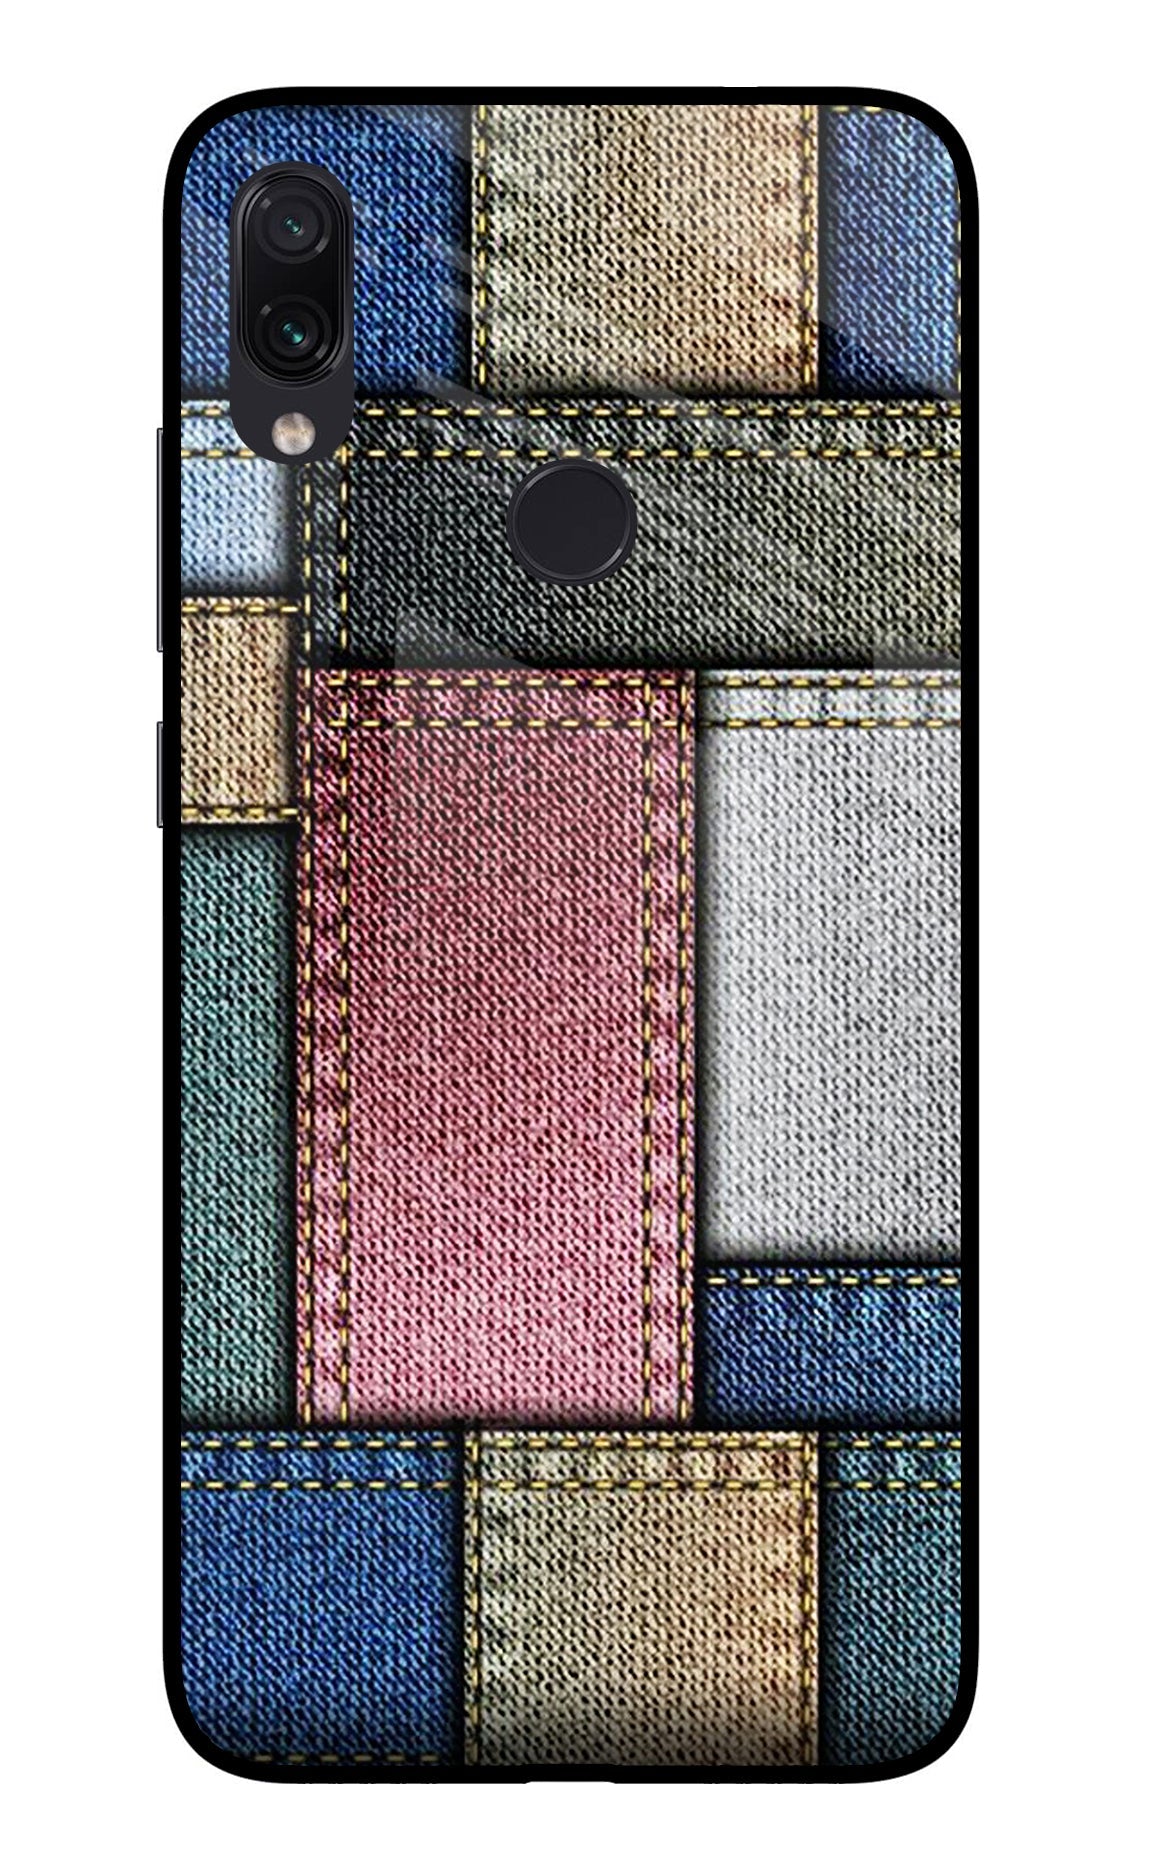 Multicolor Jeans Redmi Note 7/7S/7 Pro Glass Case